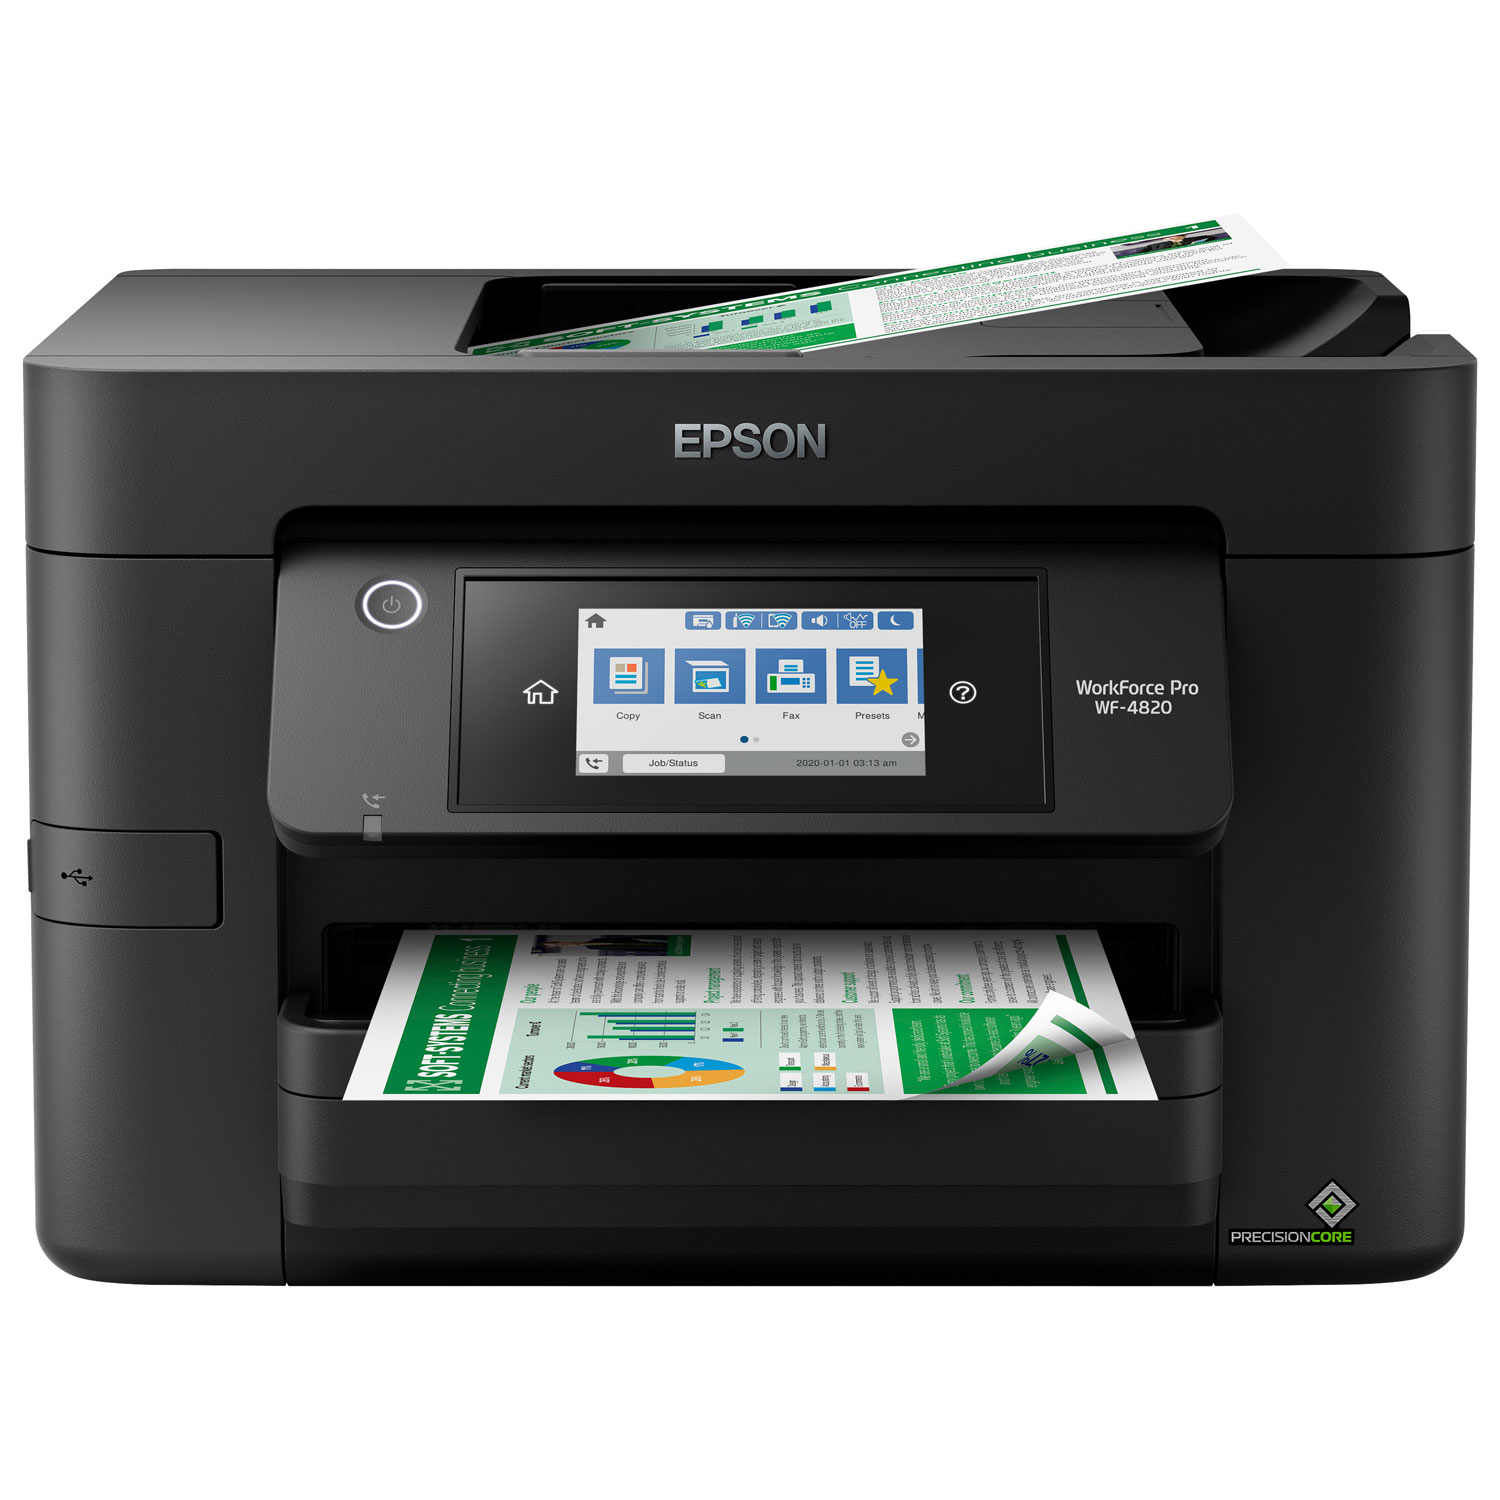 Epson WorkForce Pro WF-4820 Wireless All-In-One Inkjet Printer